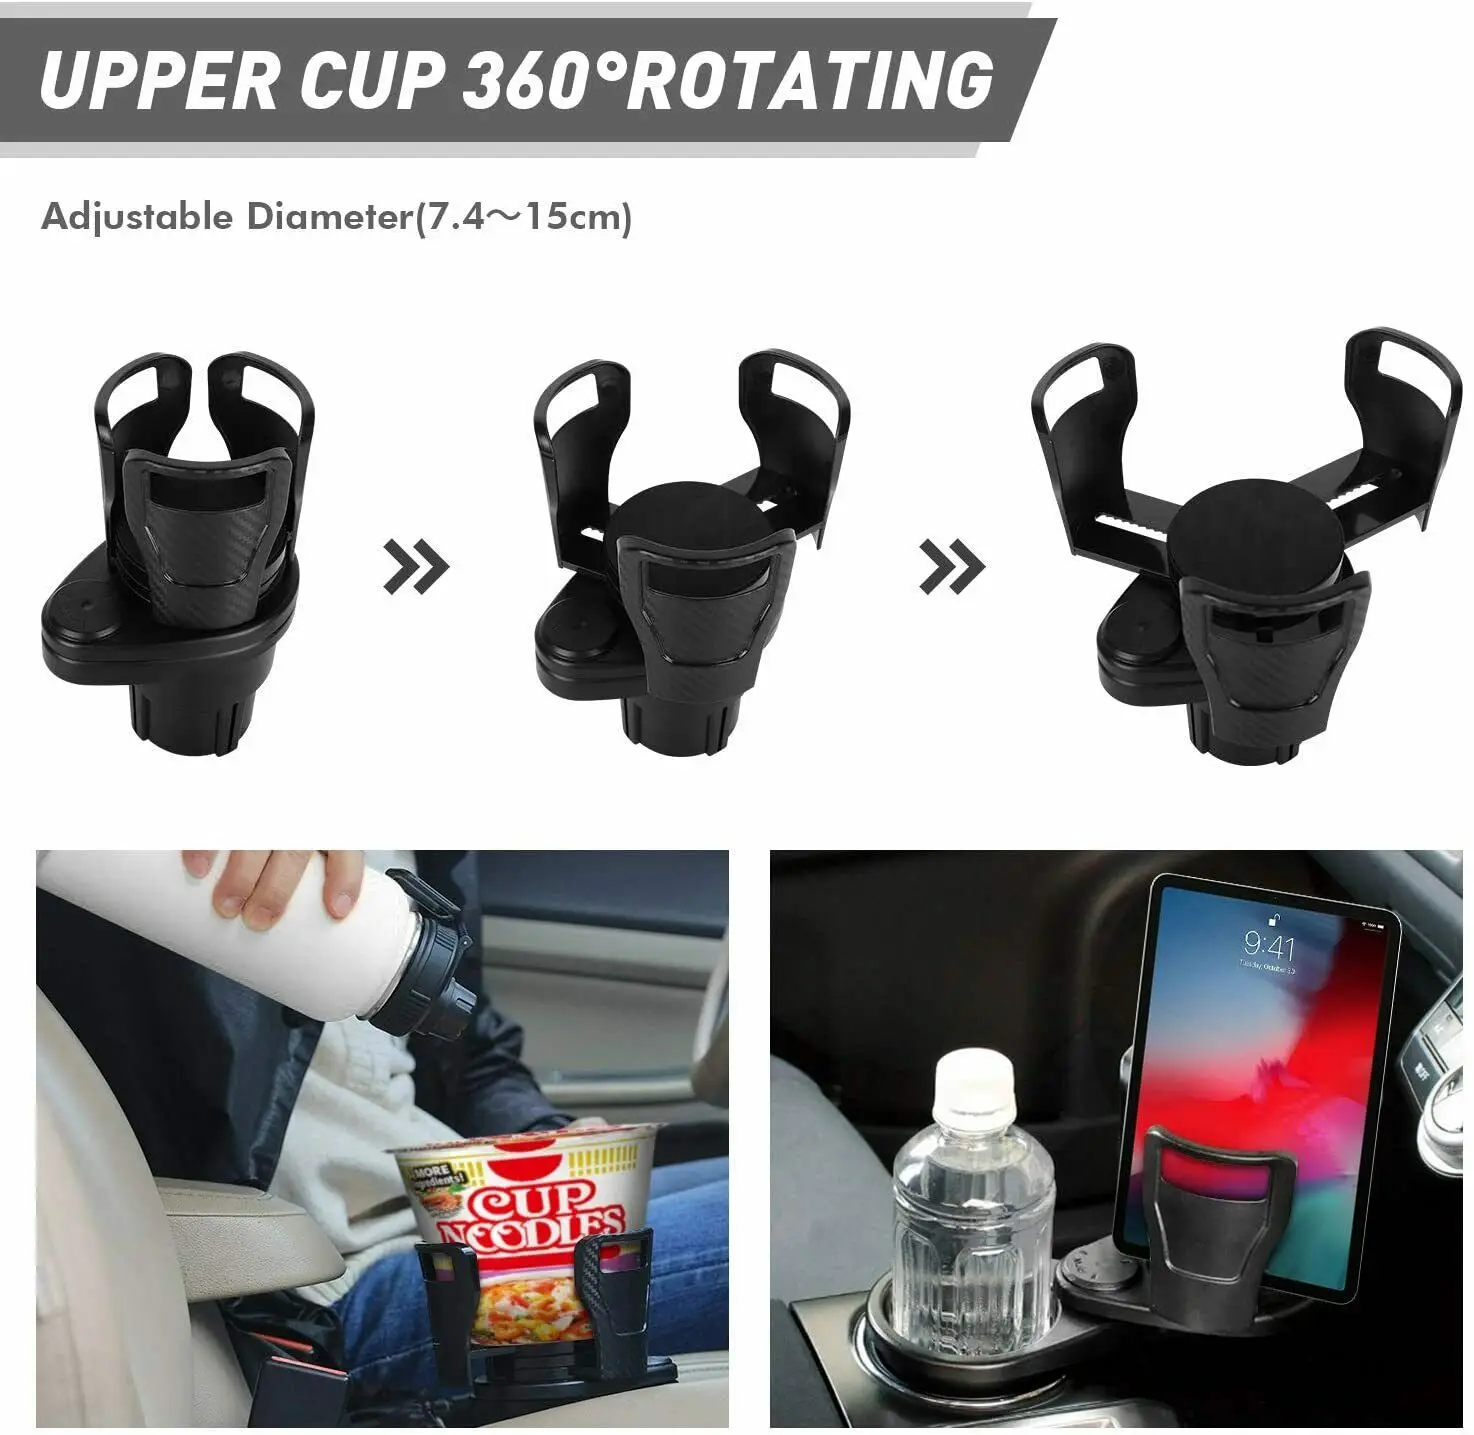 Burstler Car Cup Holder，2 in 1 Multifunctional Car Cup Holder Expander with  360° Rotating Adjustable Cup Holder Expander for Car, Bonus Phone Mount